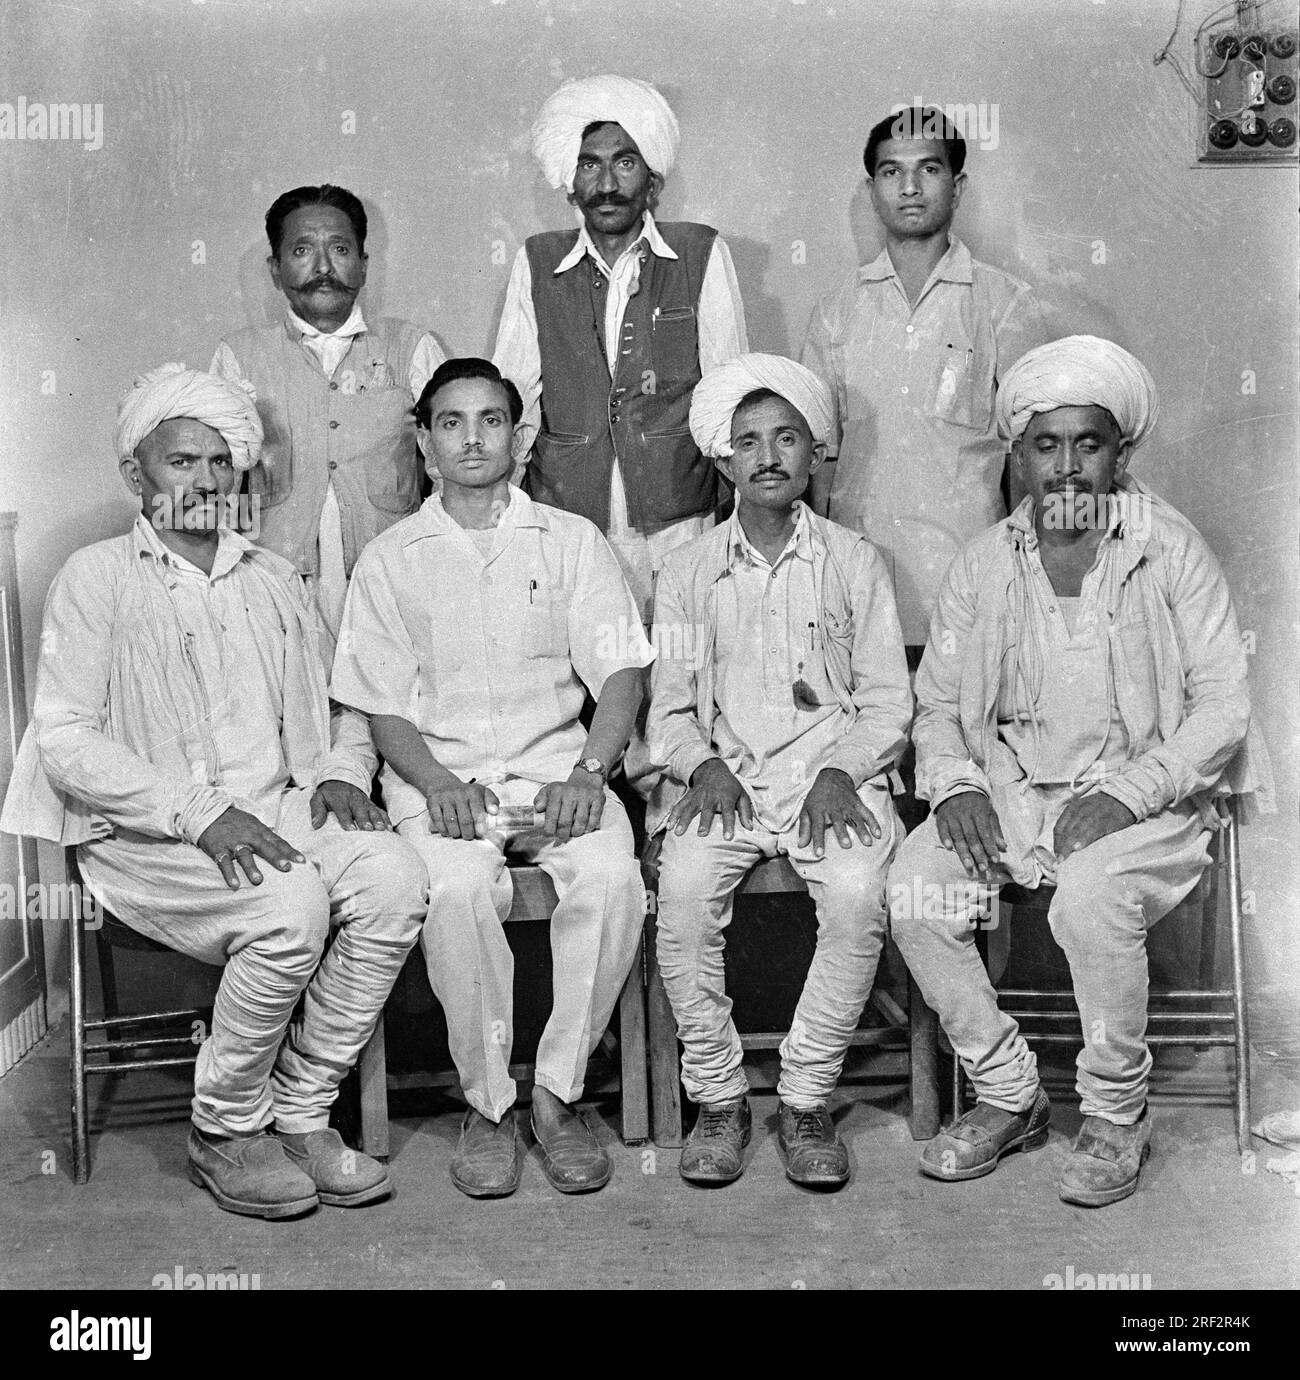 Vieux vintage des années 1900 photo de studio noir et blanc d'amis indiens agriculteurs portant la robe traditionnelle kathiawari turban Kathiyawad Inde des années 1940 Banque D'Images